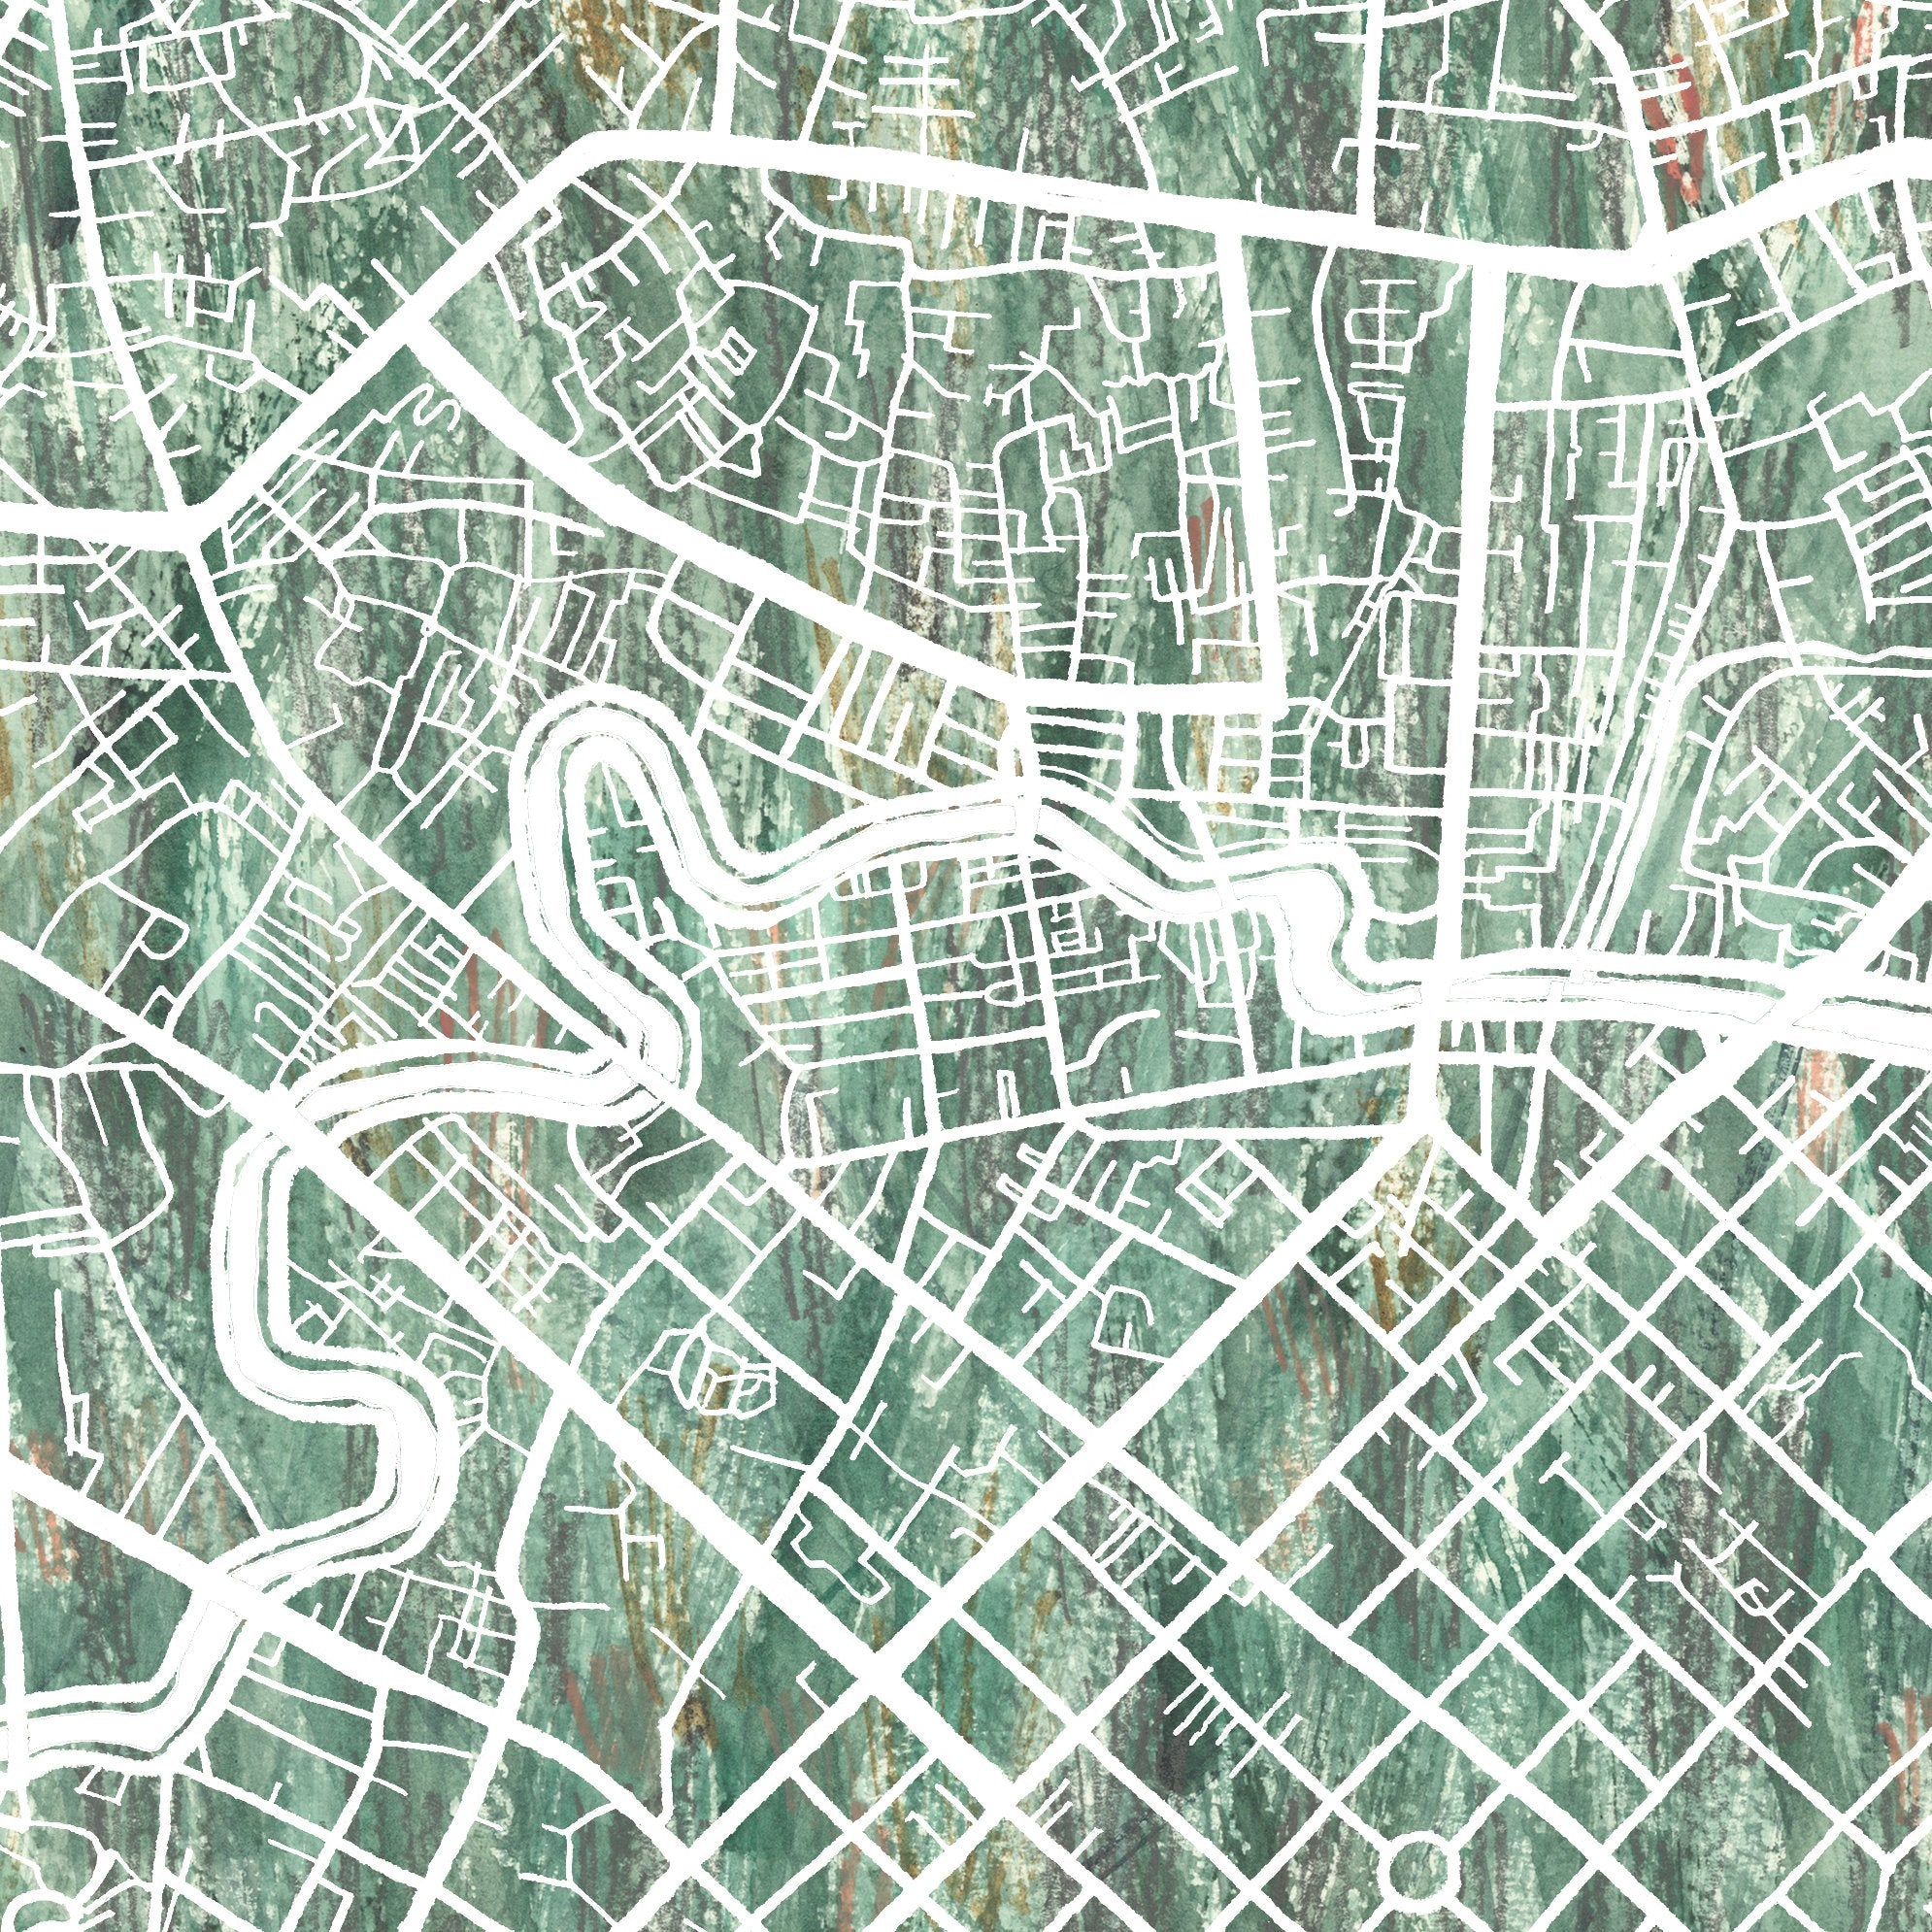 HO CHI MINH CITY Urban Fabrics City Map: PRINT